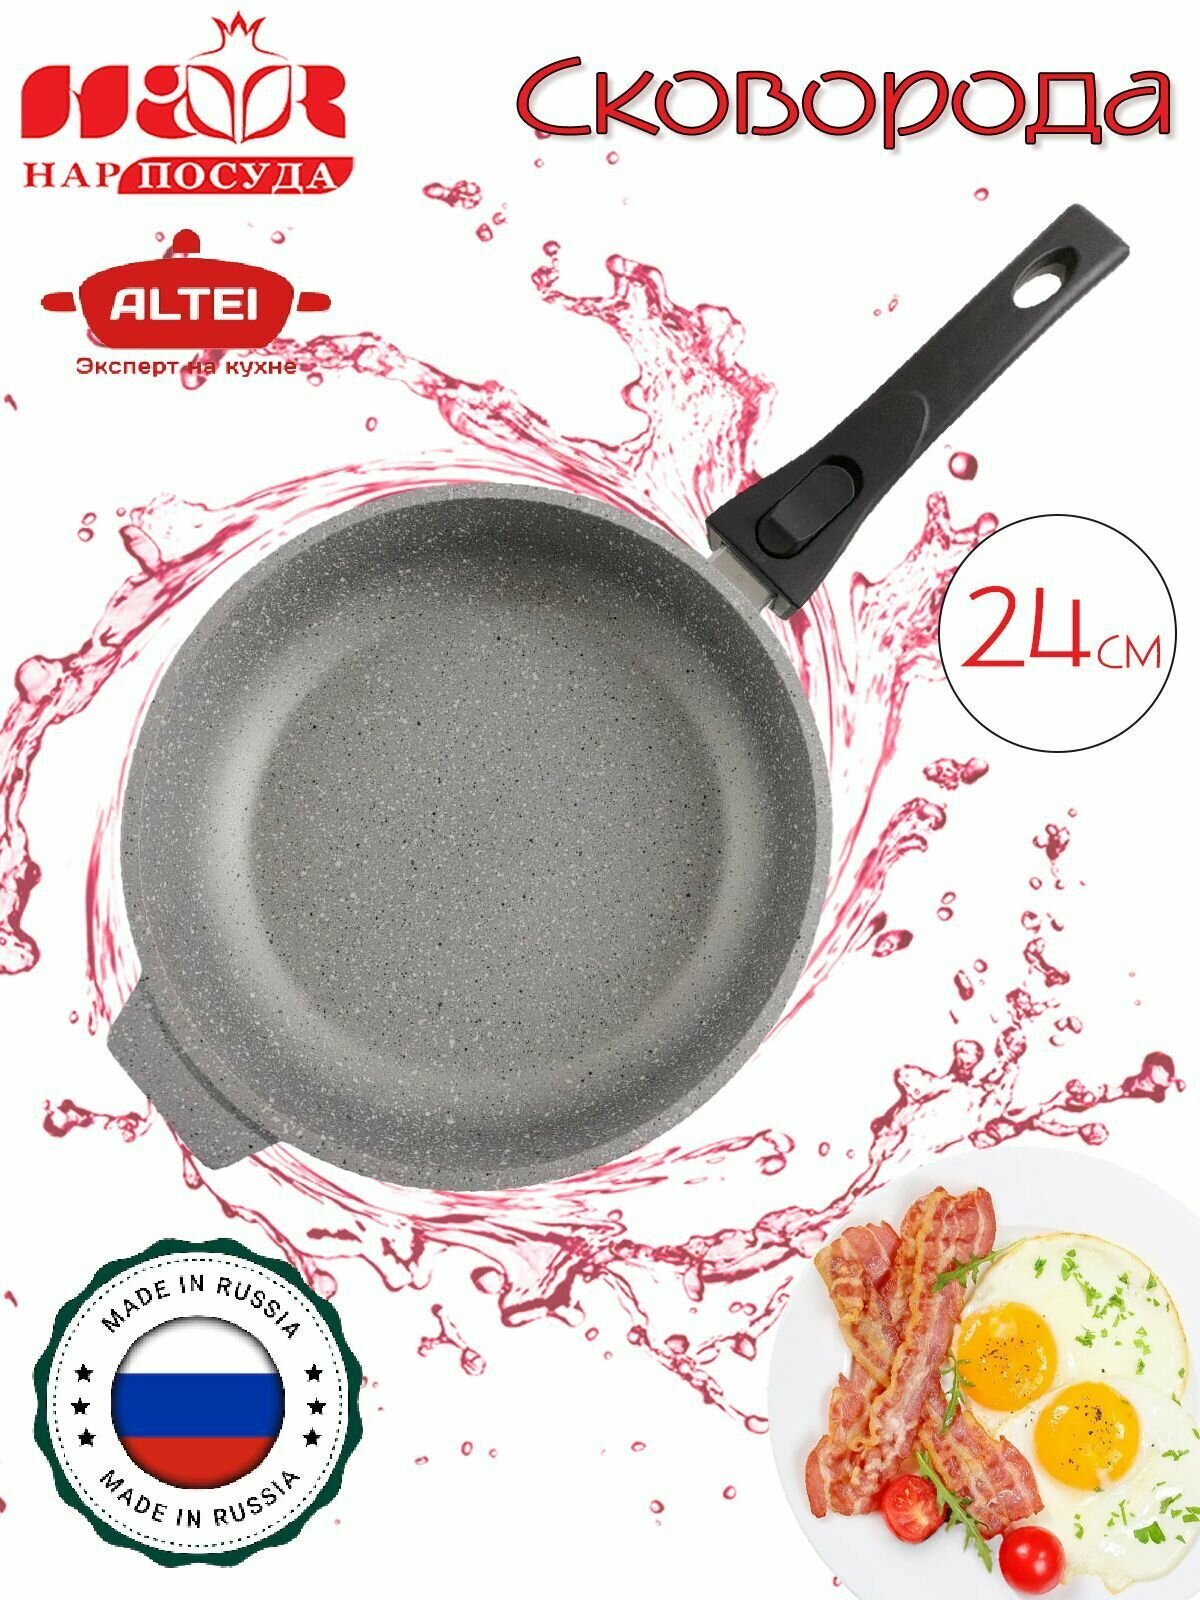 Сковорода антипригарная со съемной ручкой ALTEI, 24 см